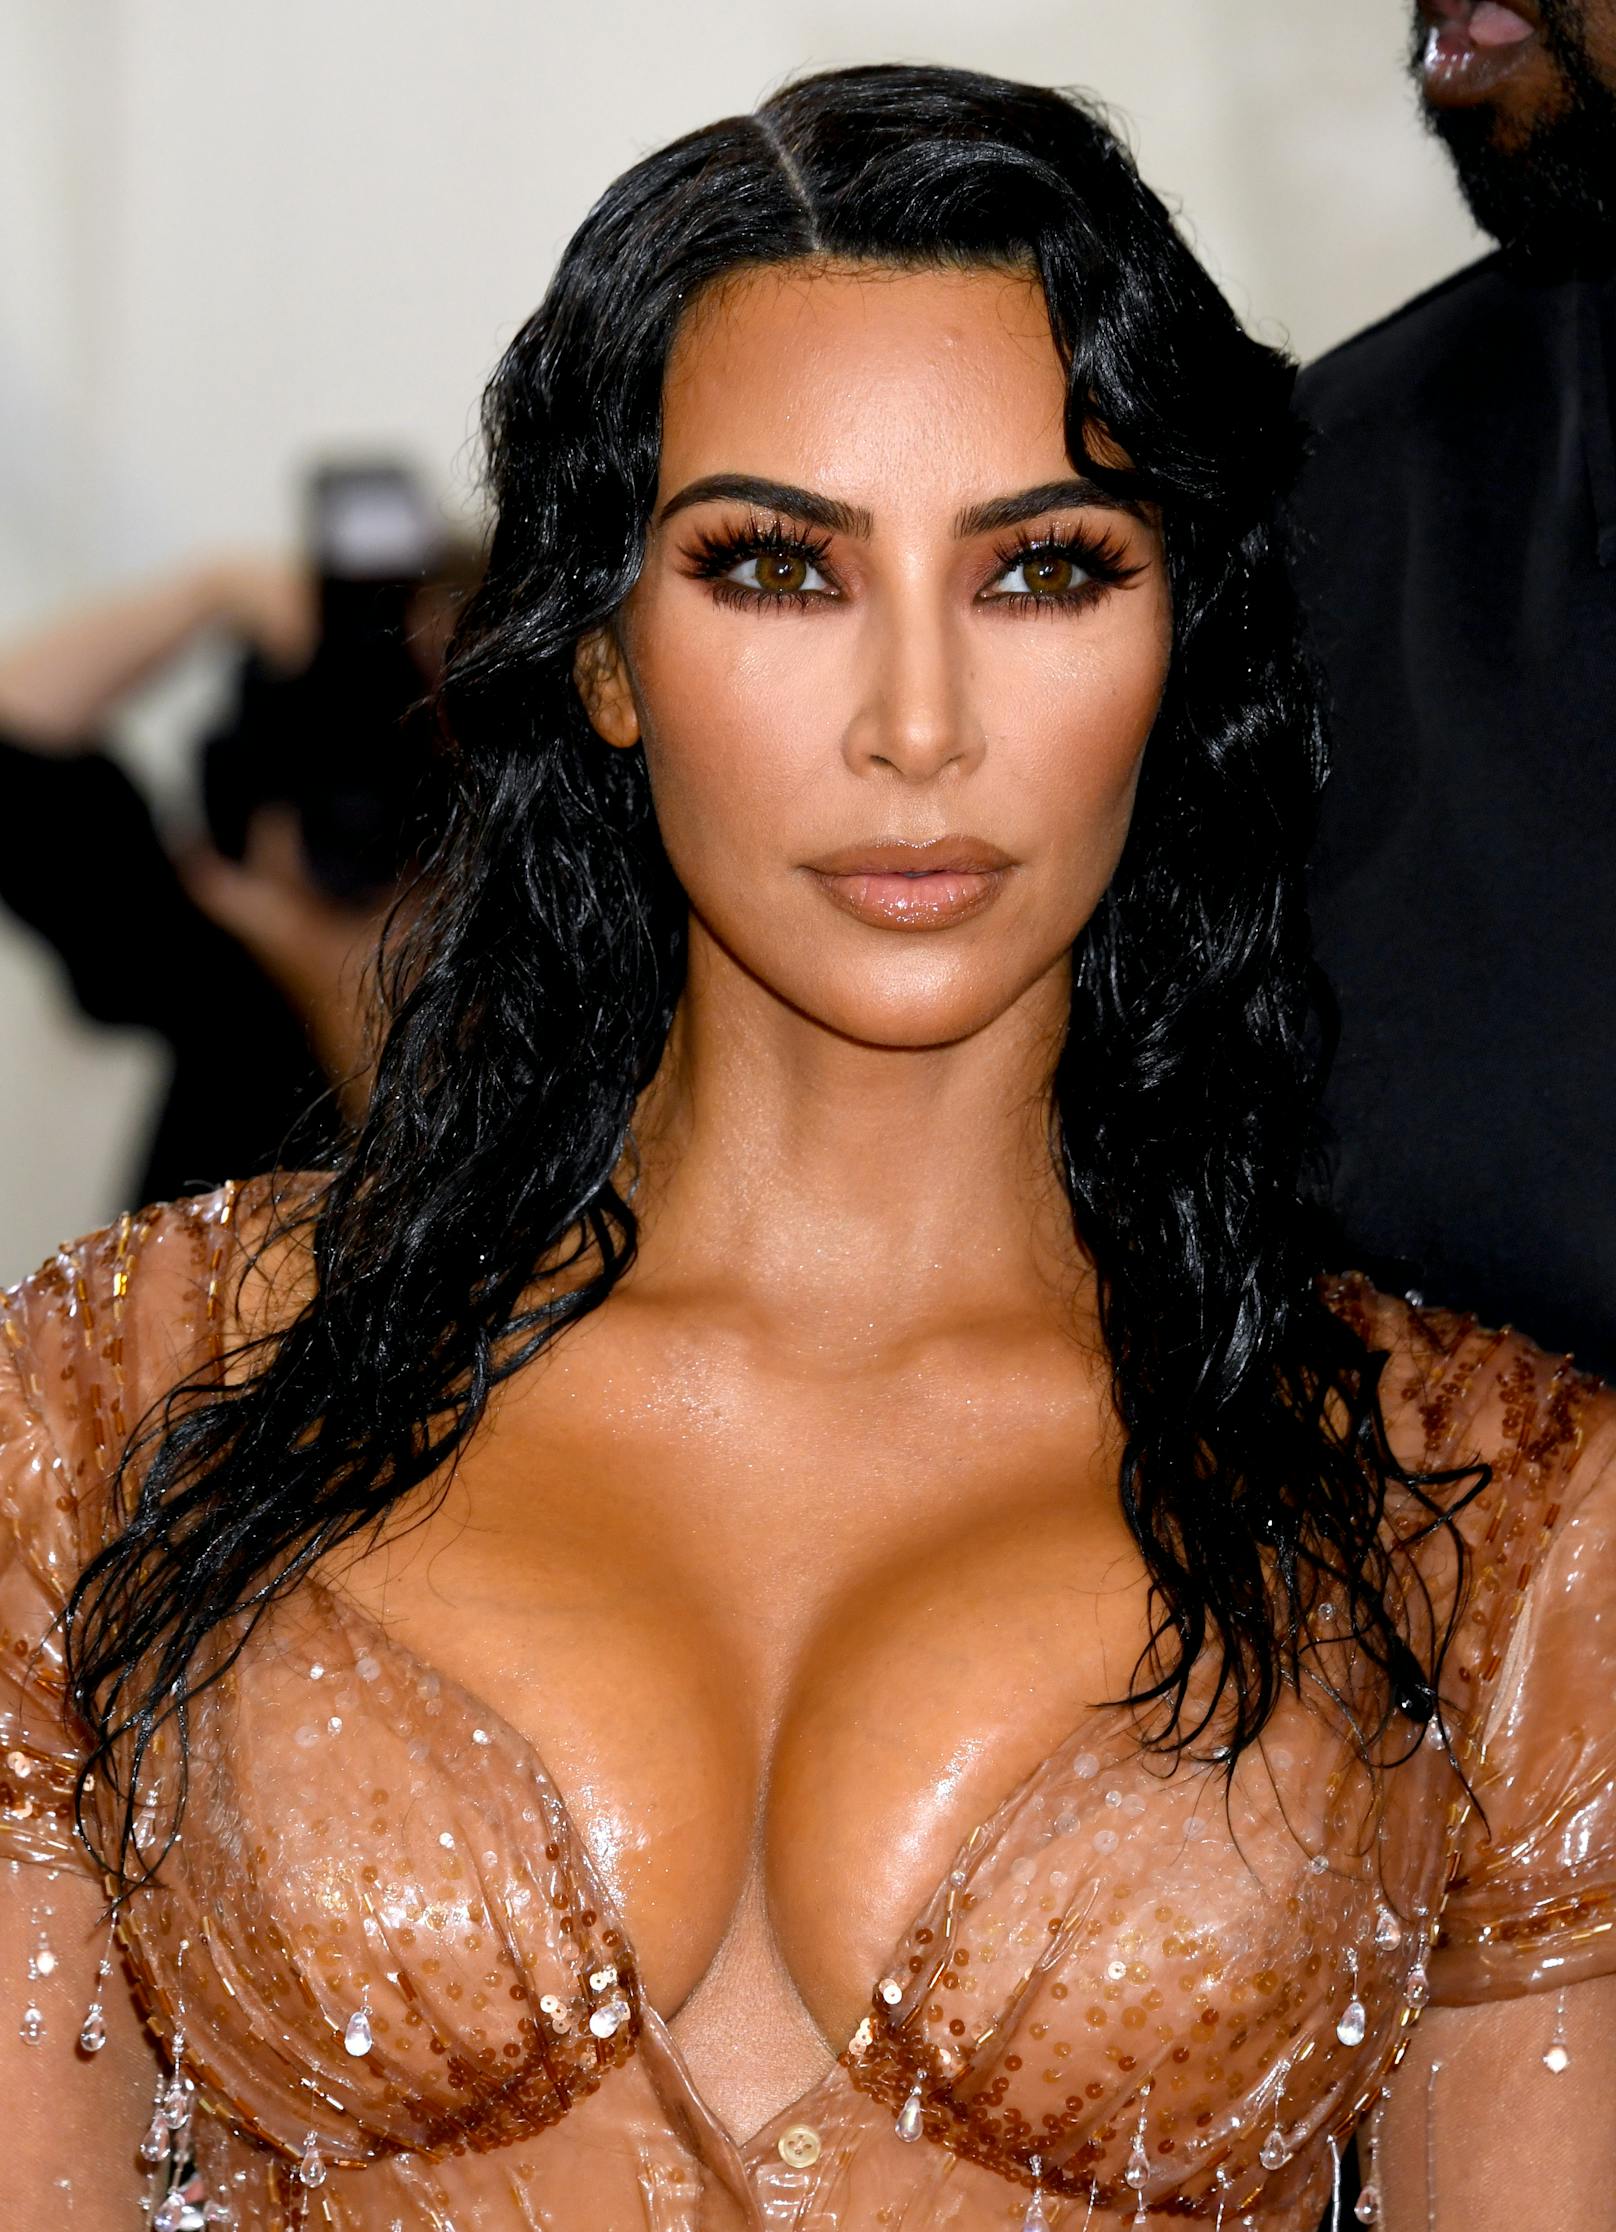 Bei der Met Gala 2019 hat Kim Kardashian mit ihrem Tropfen-Look und passendem Haar allen die Show gestohlen.